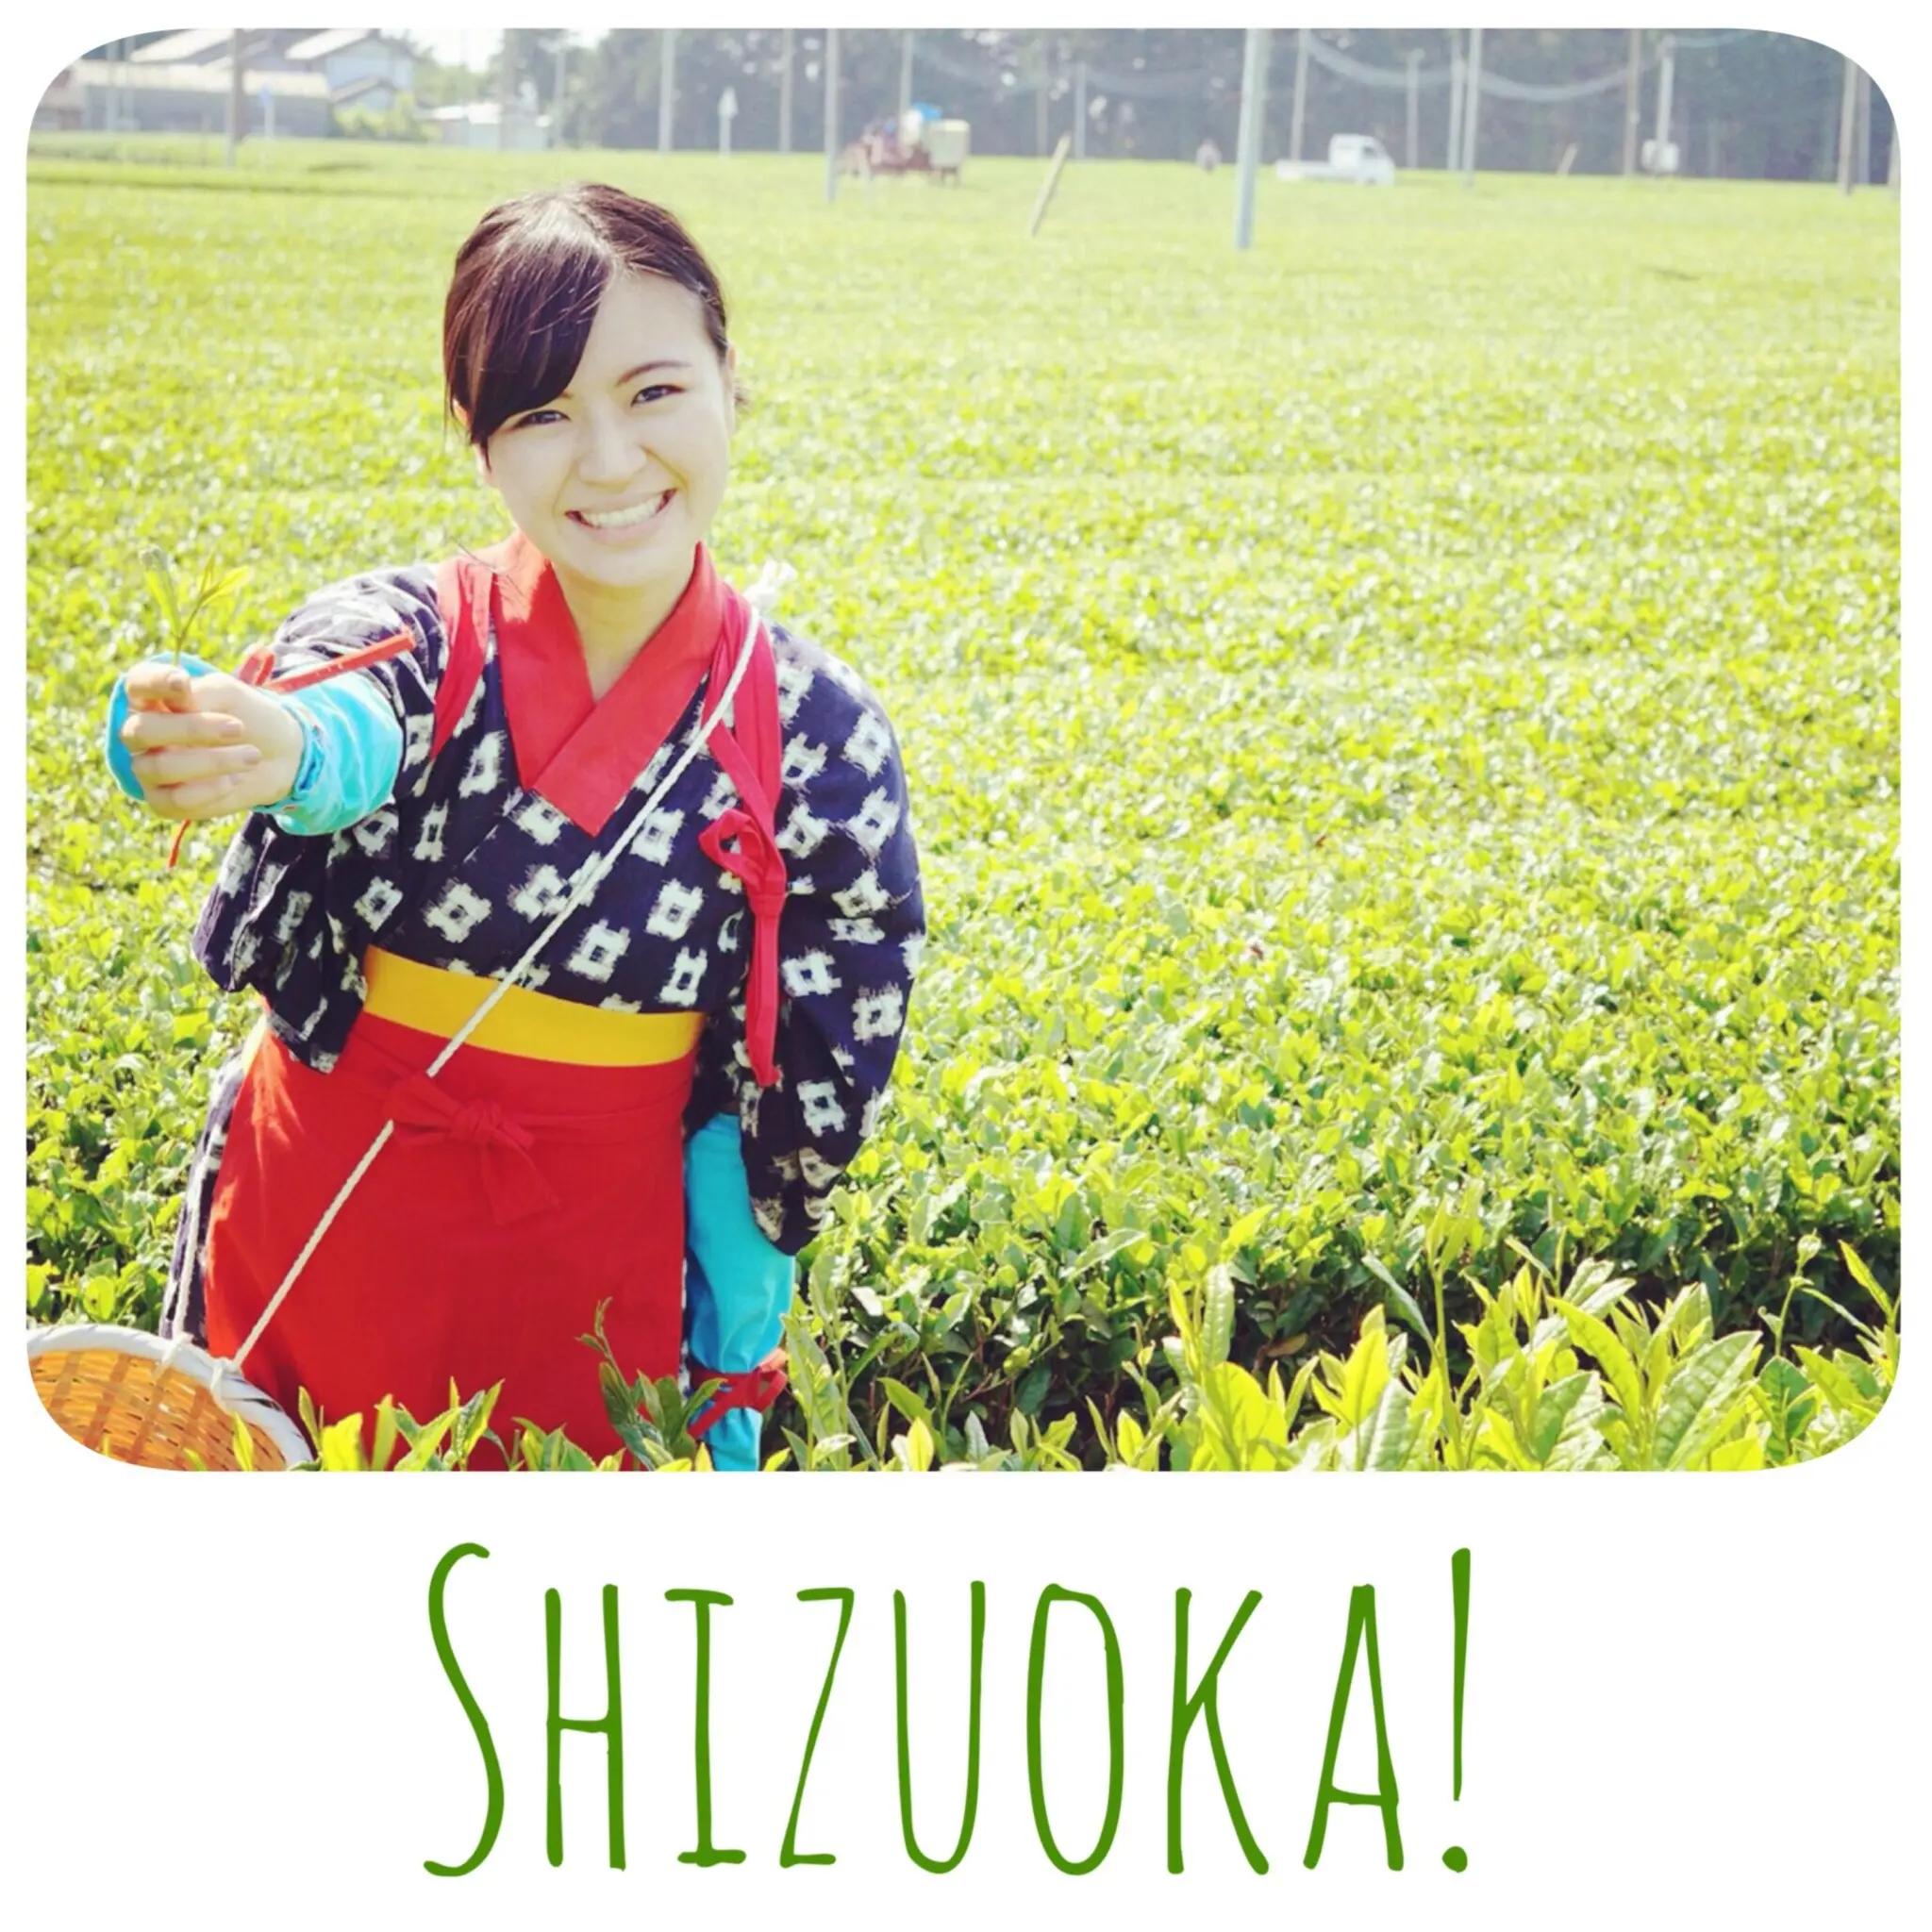 茶摘み娘を体験 静岡で非日常な時間を楽しもう Moreインフルエンサーズブログ Daily More